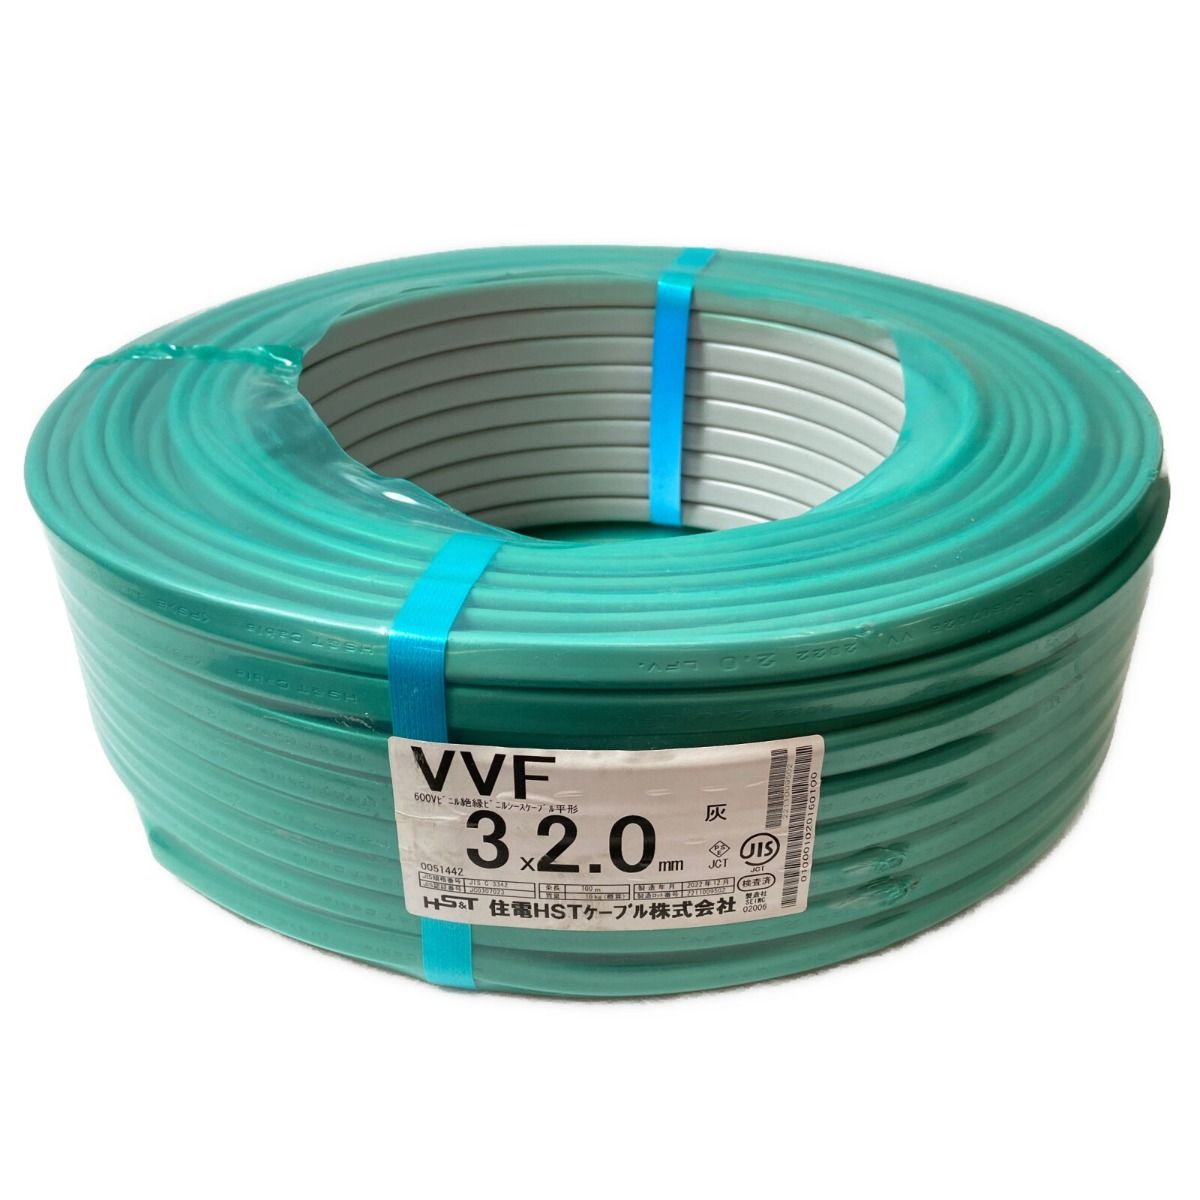 VVFケーブル 住電HS 電線 VVF2.0-3C 黒.白.緑 1巻〔100m〕 - ケーブル 